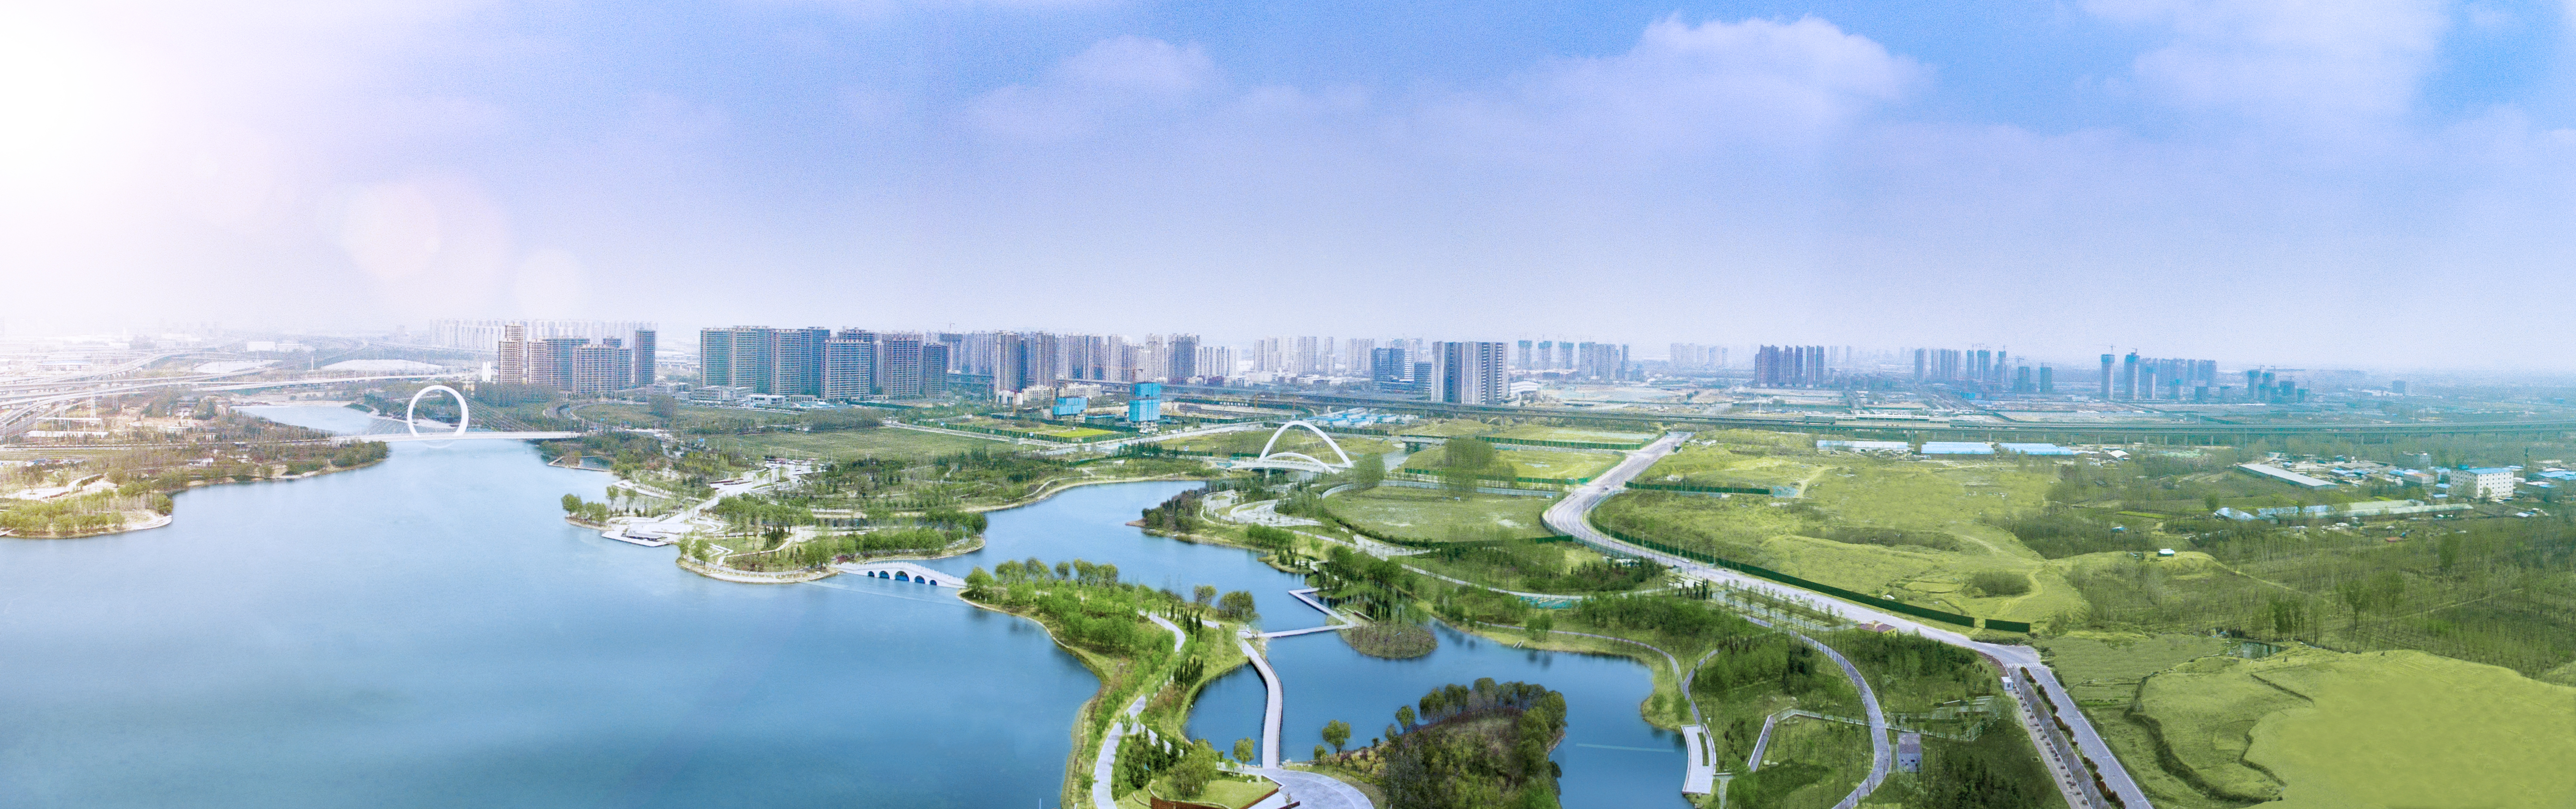 3-中建七局投资建设运营的郑州滨河国际新城，郑州市32个城市建设核心板块之一.jpg